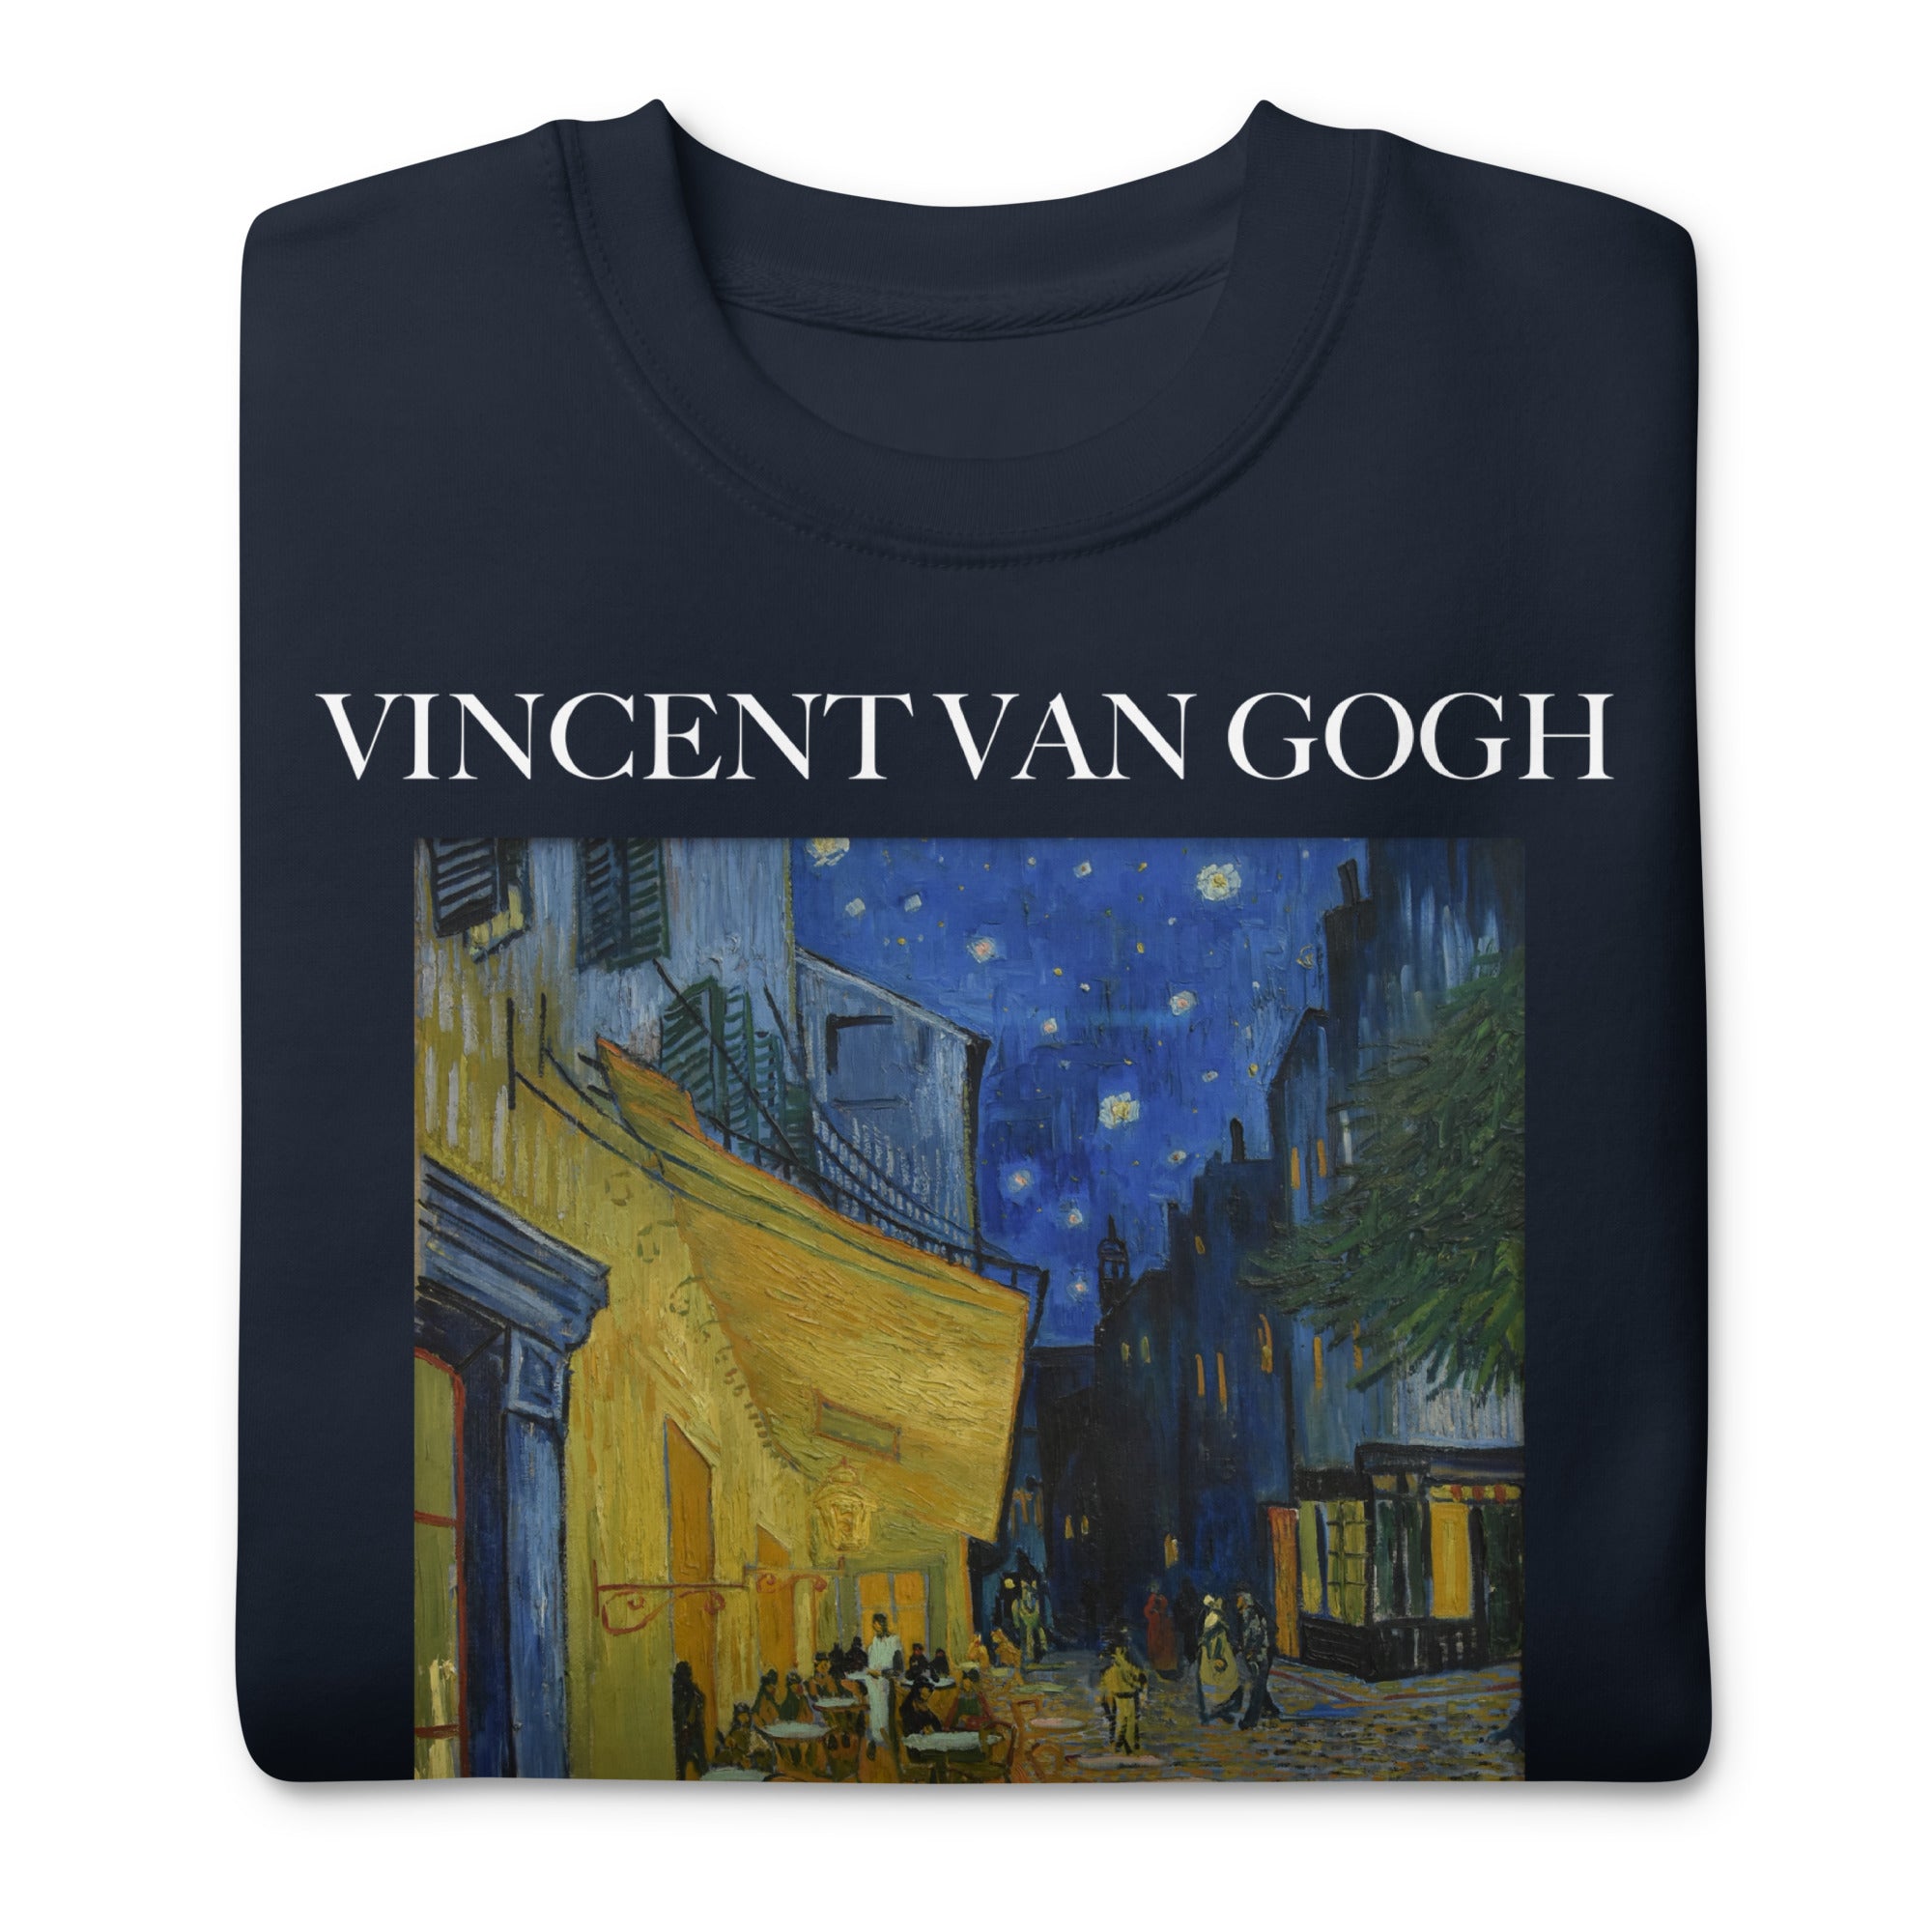 Vincent van Gogh 'Café Terrace at Night' Famous Painting Sweatshirt | Unisex Premium Sweatshirt